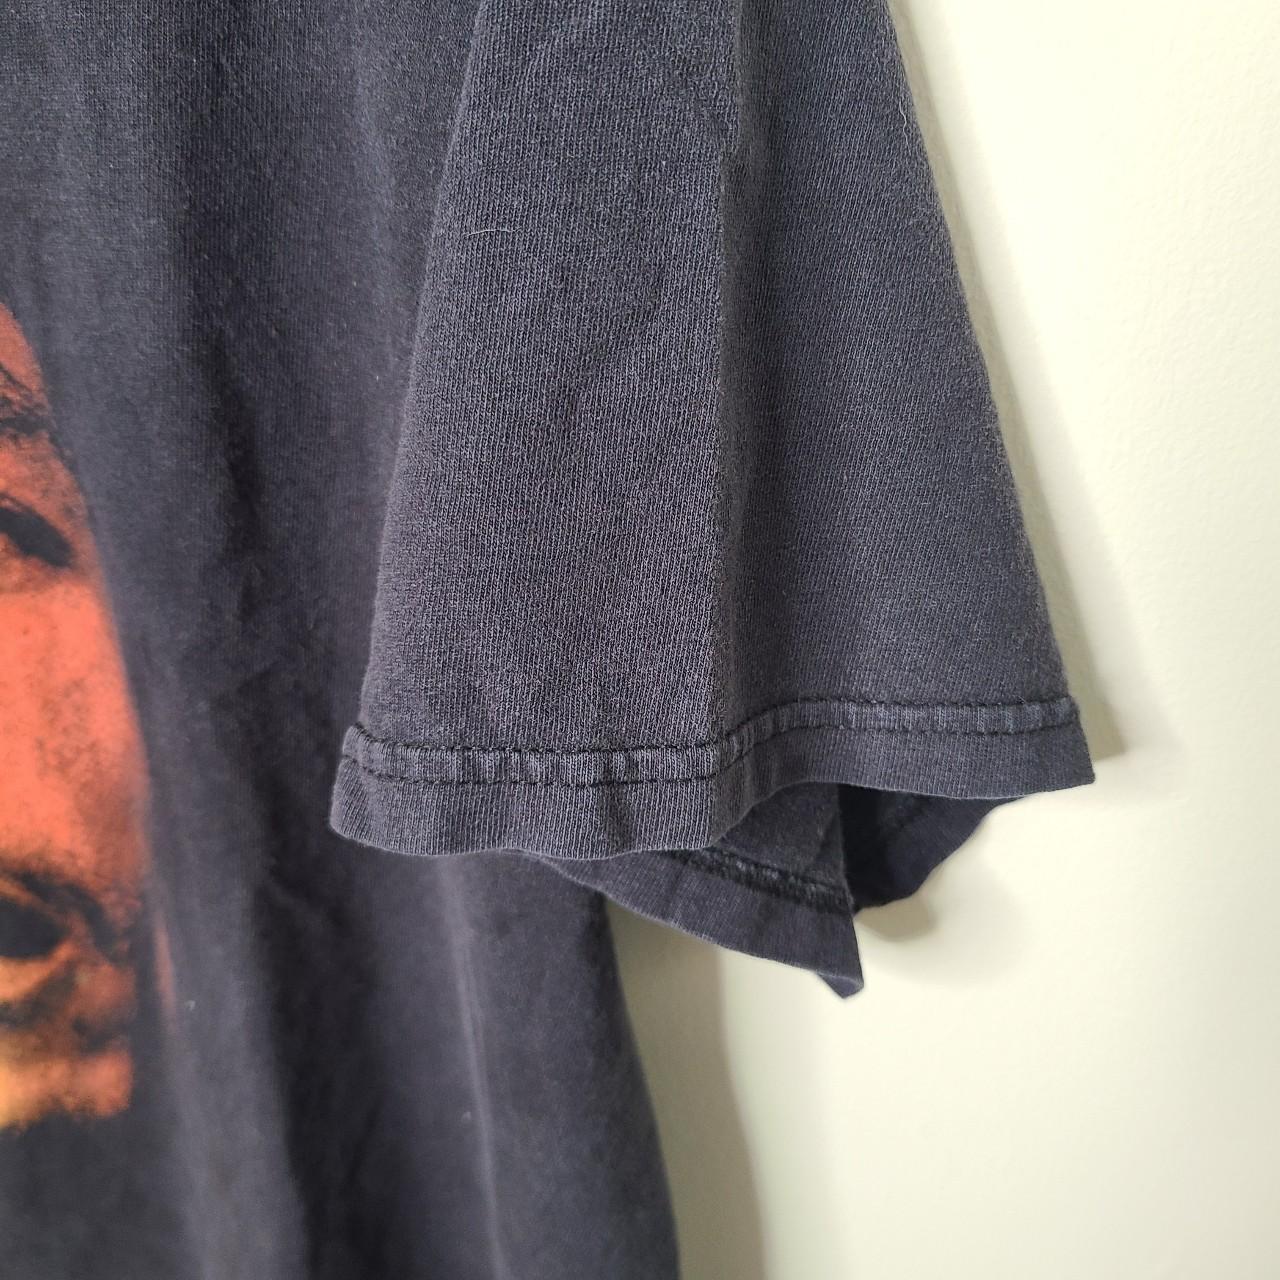 Vintage Bob Marley Zion Tshirt